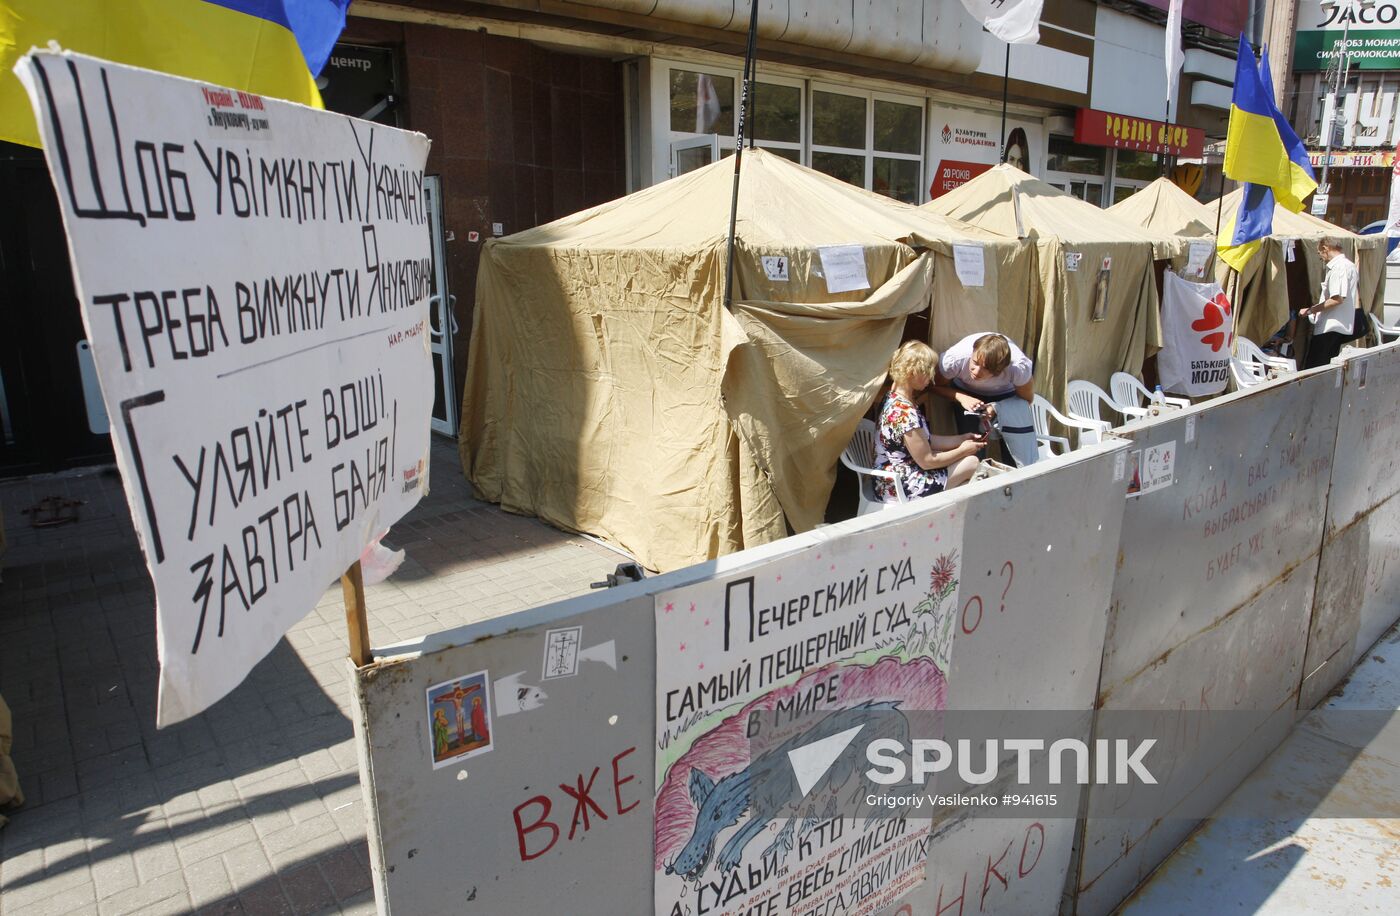 Yulia Tymoshenko fans' tent camp in Kiev